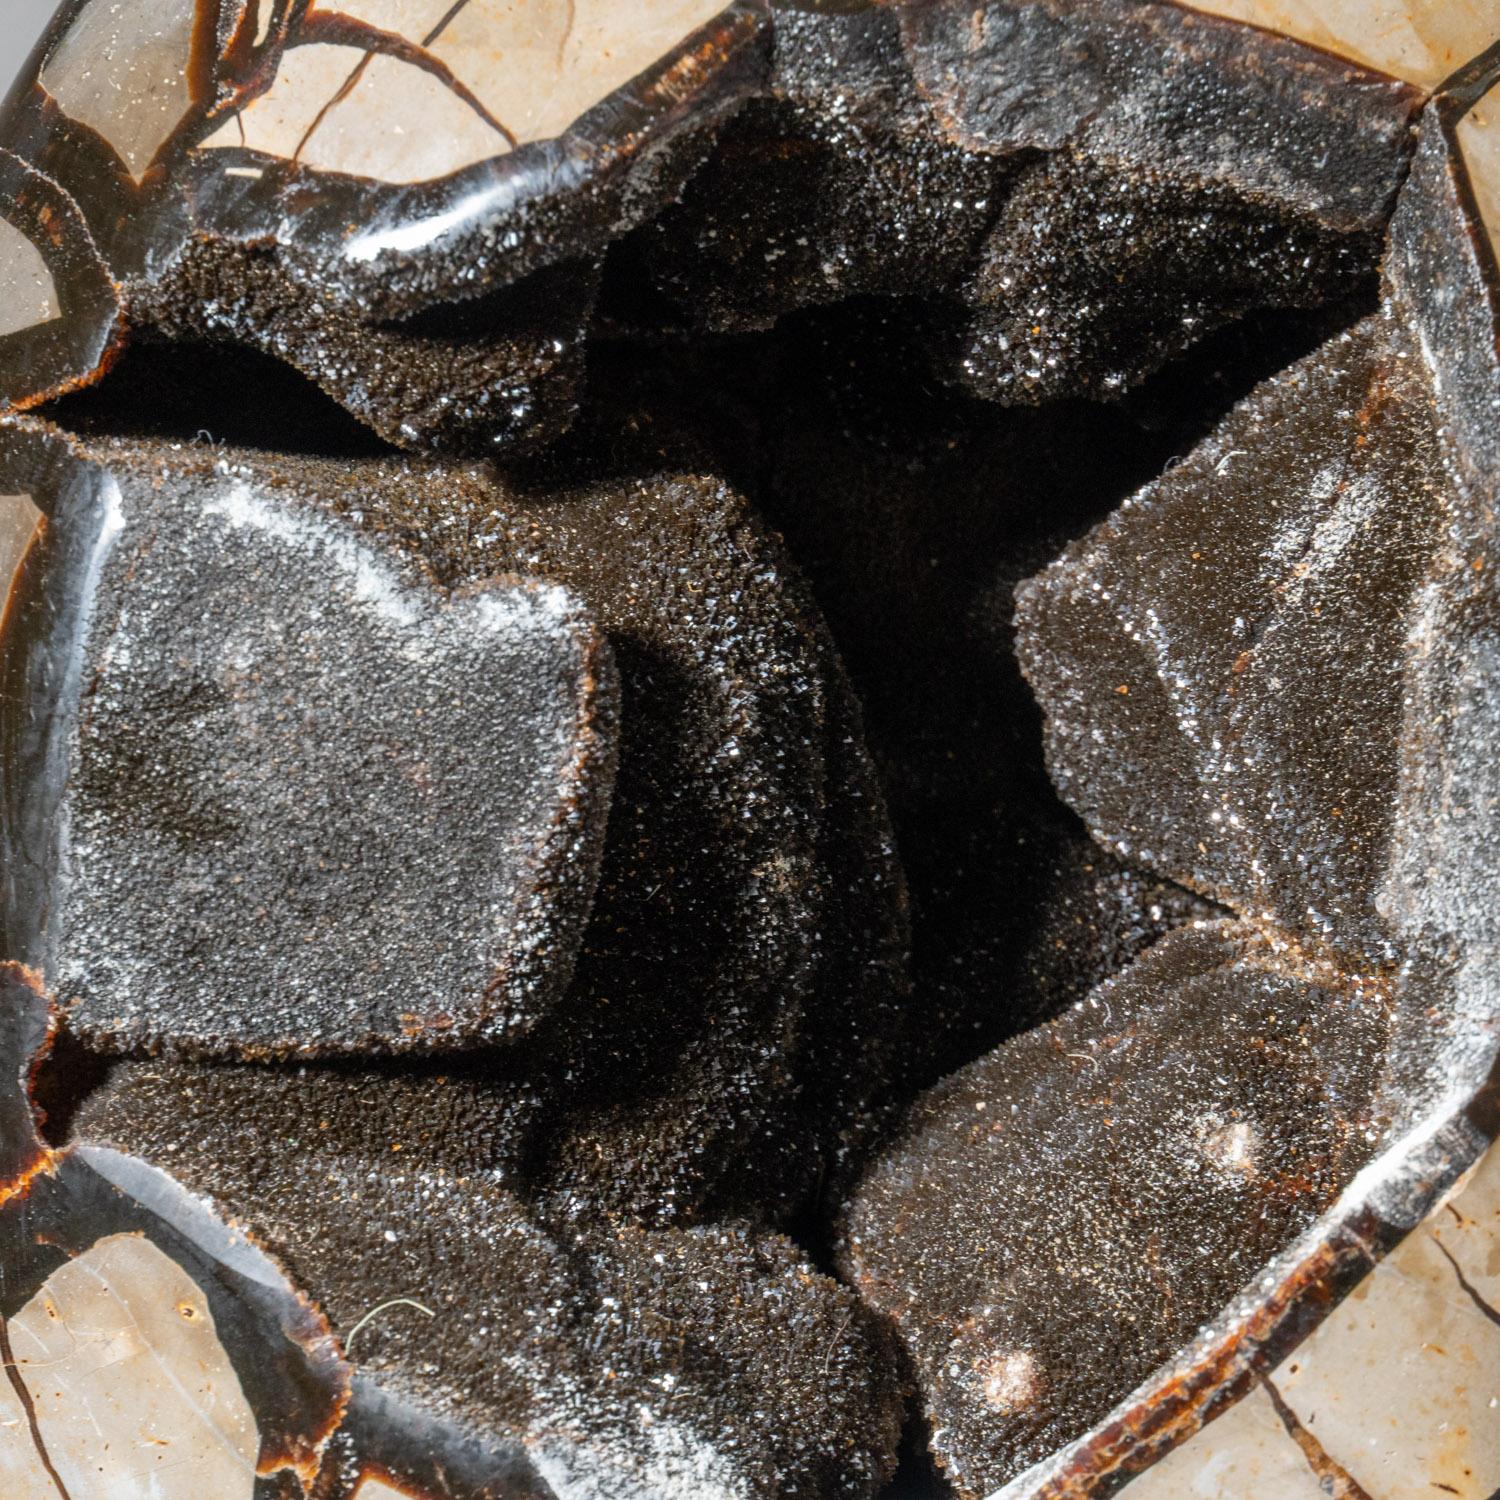 Cet œuf de géode de quartz druzy septarien de qualité AAA de 35 livres provenant de Madagascar présente une zone exposée tapissée de cristaux de quartz druzy éblouissants, ainsi qu'une face arrière polie, offrant une surface hautement